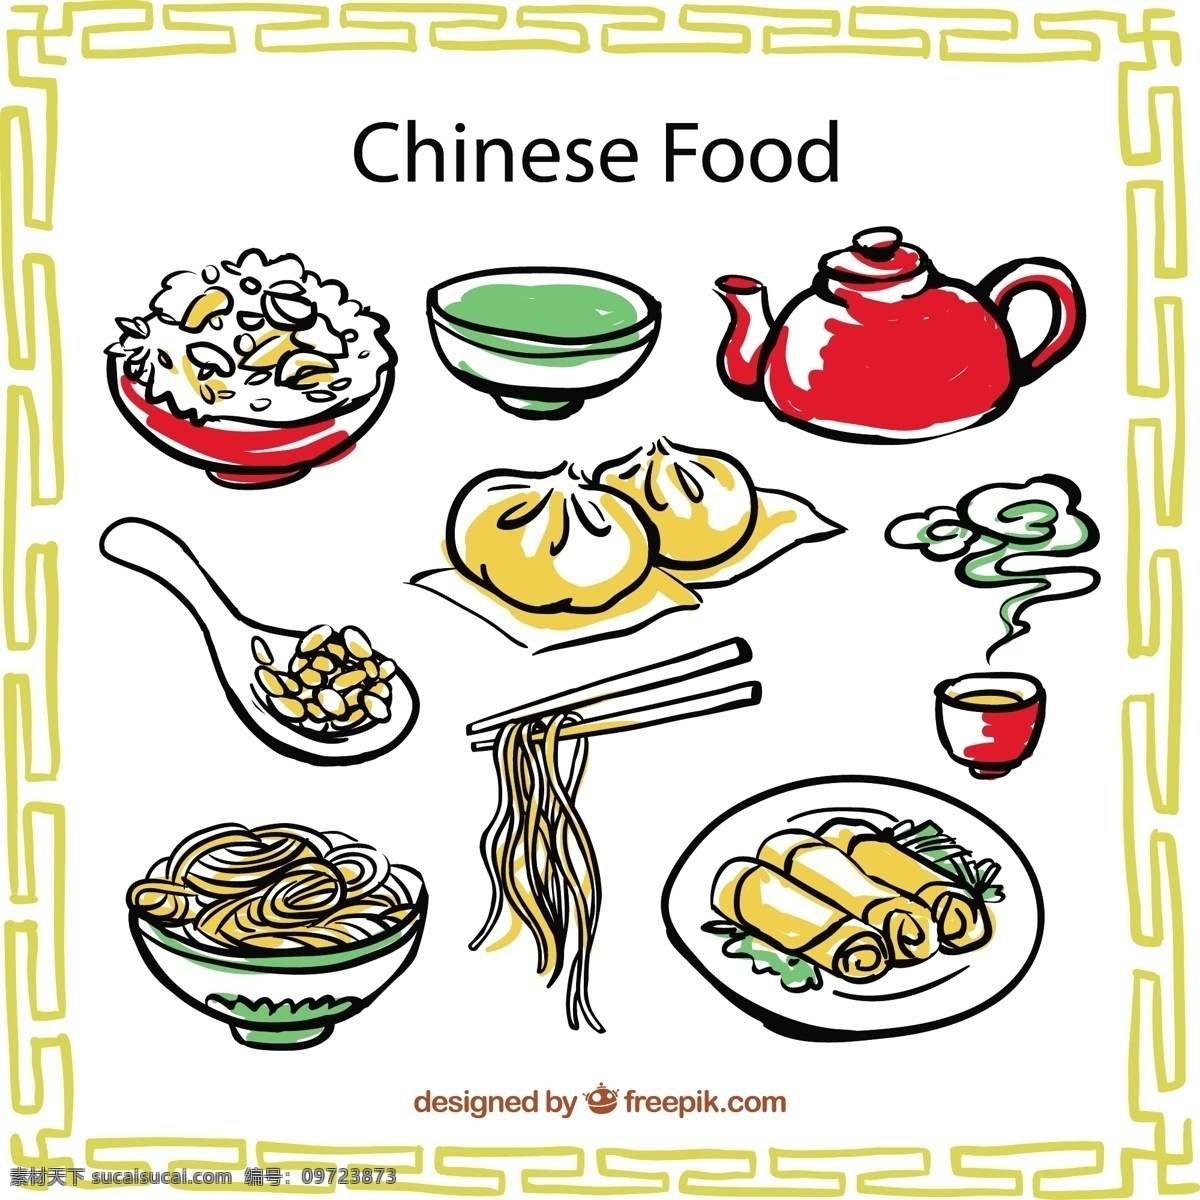 手工 绘制 中国 食品 食物 绘画 大米 东方 文化 亚洲 传统 面条 抽纱 图标 高清 源文件